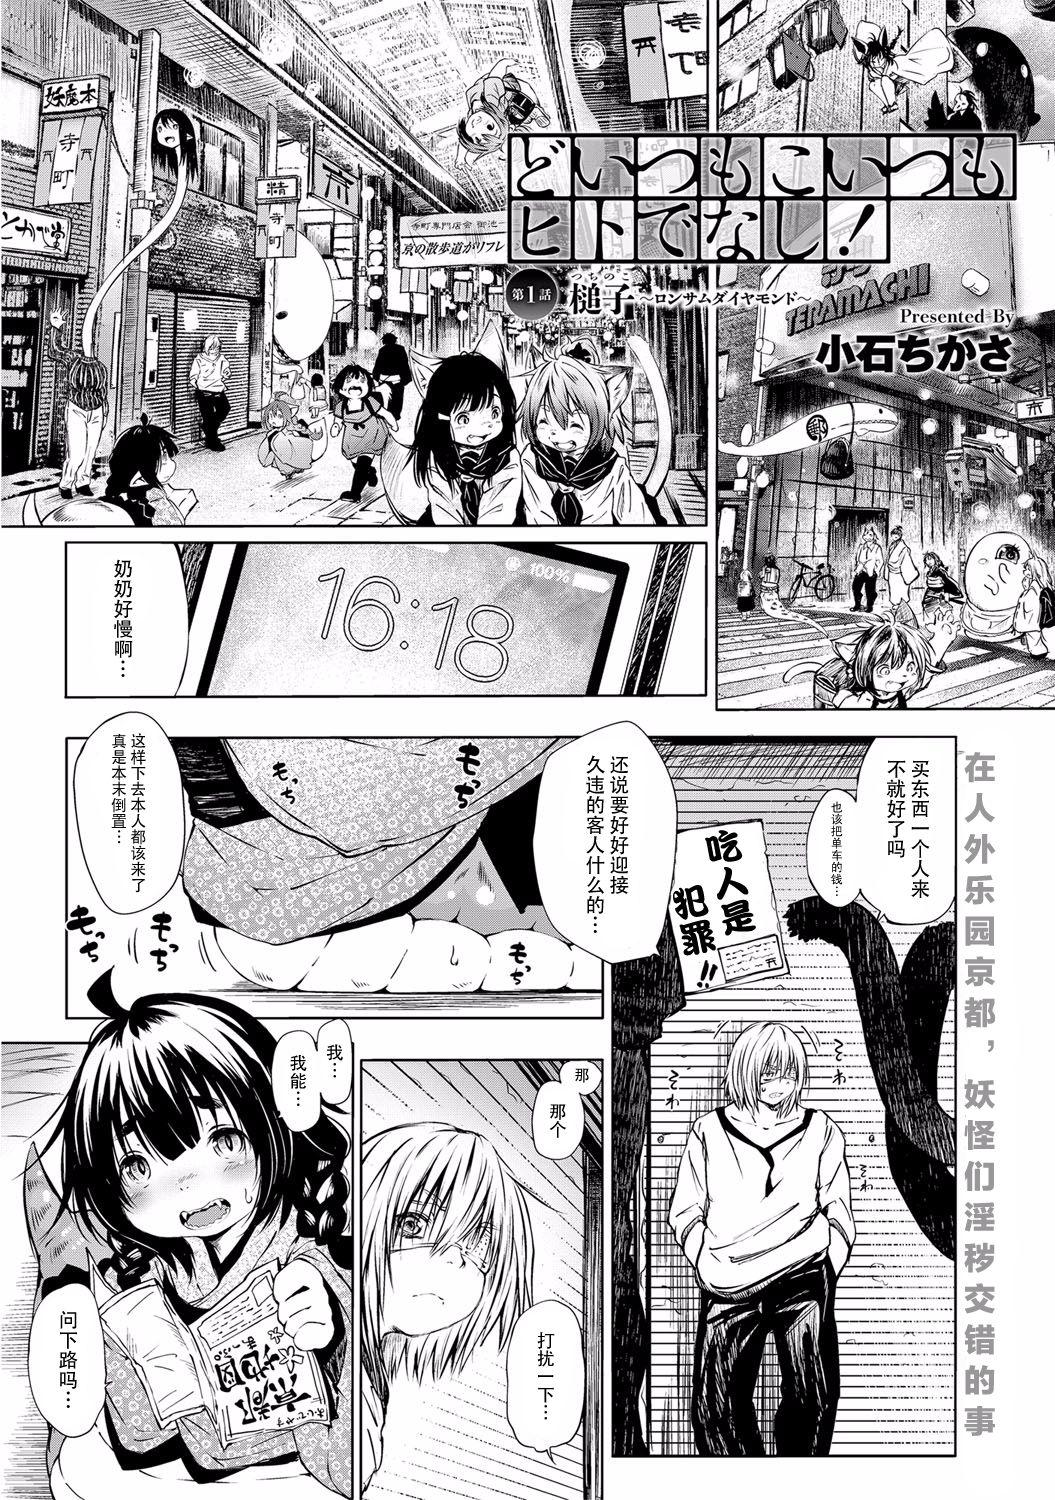 Safada Doitsu mo Koitsu mo Hito de Nashi! Ch. 1 - Tsuchinoko Bang Bros - Page 2